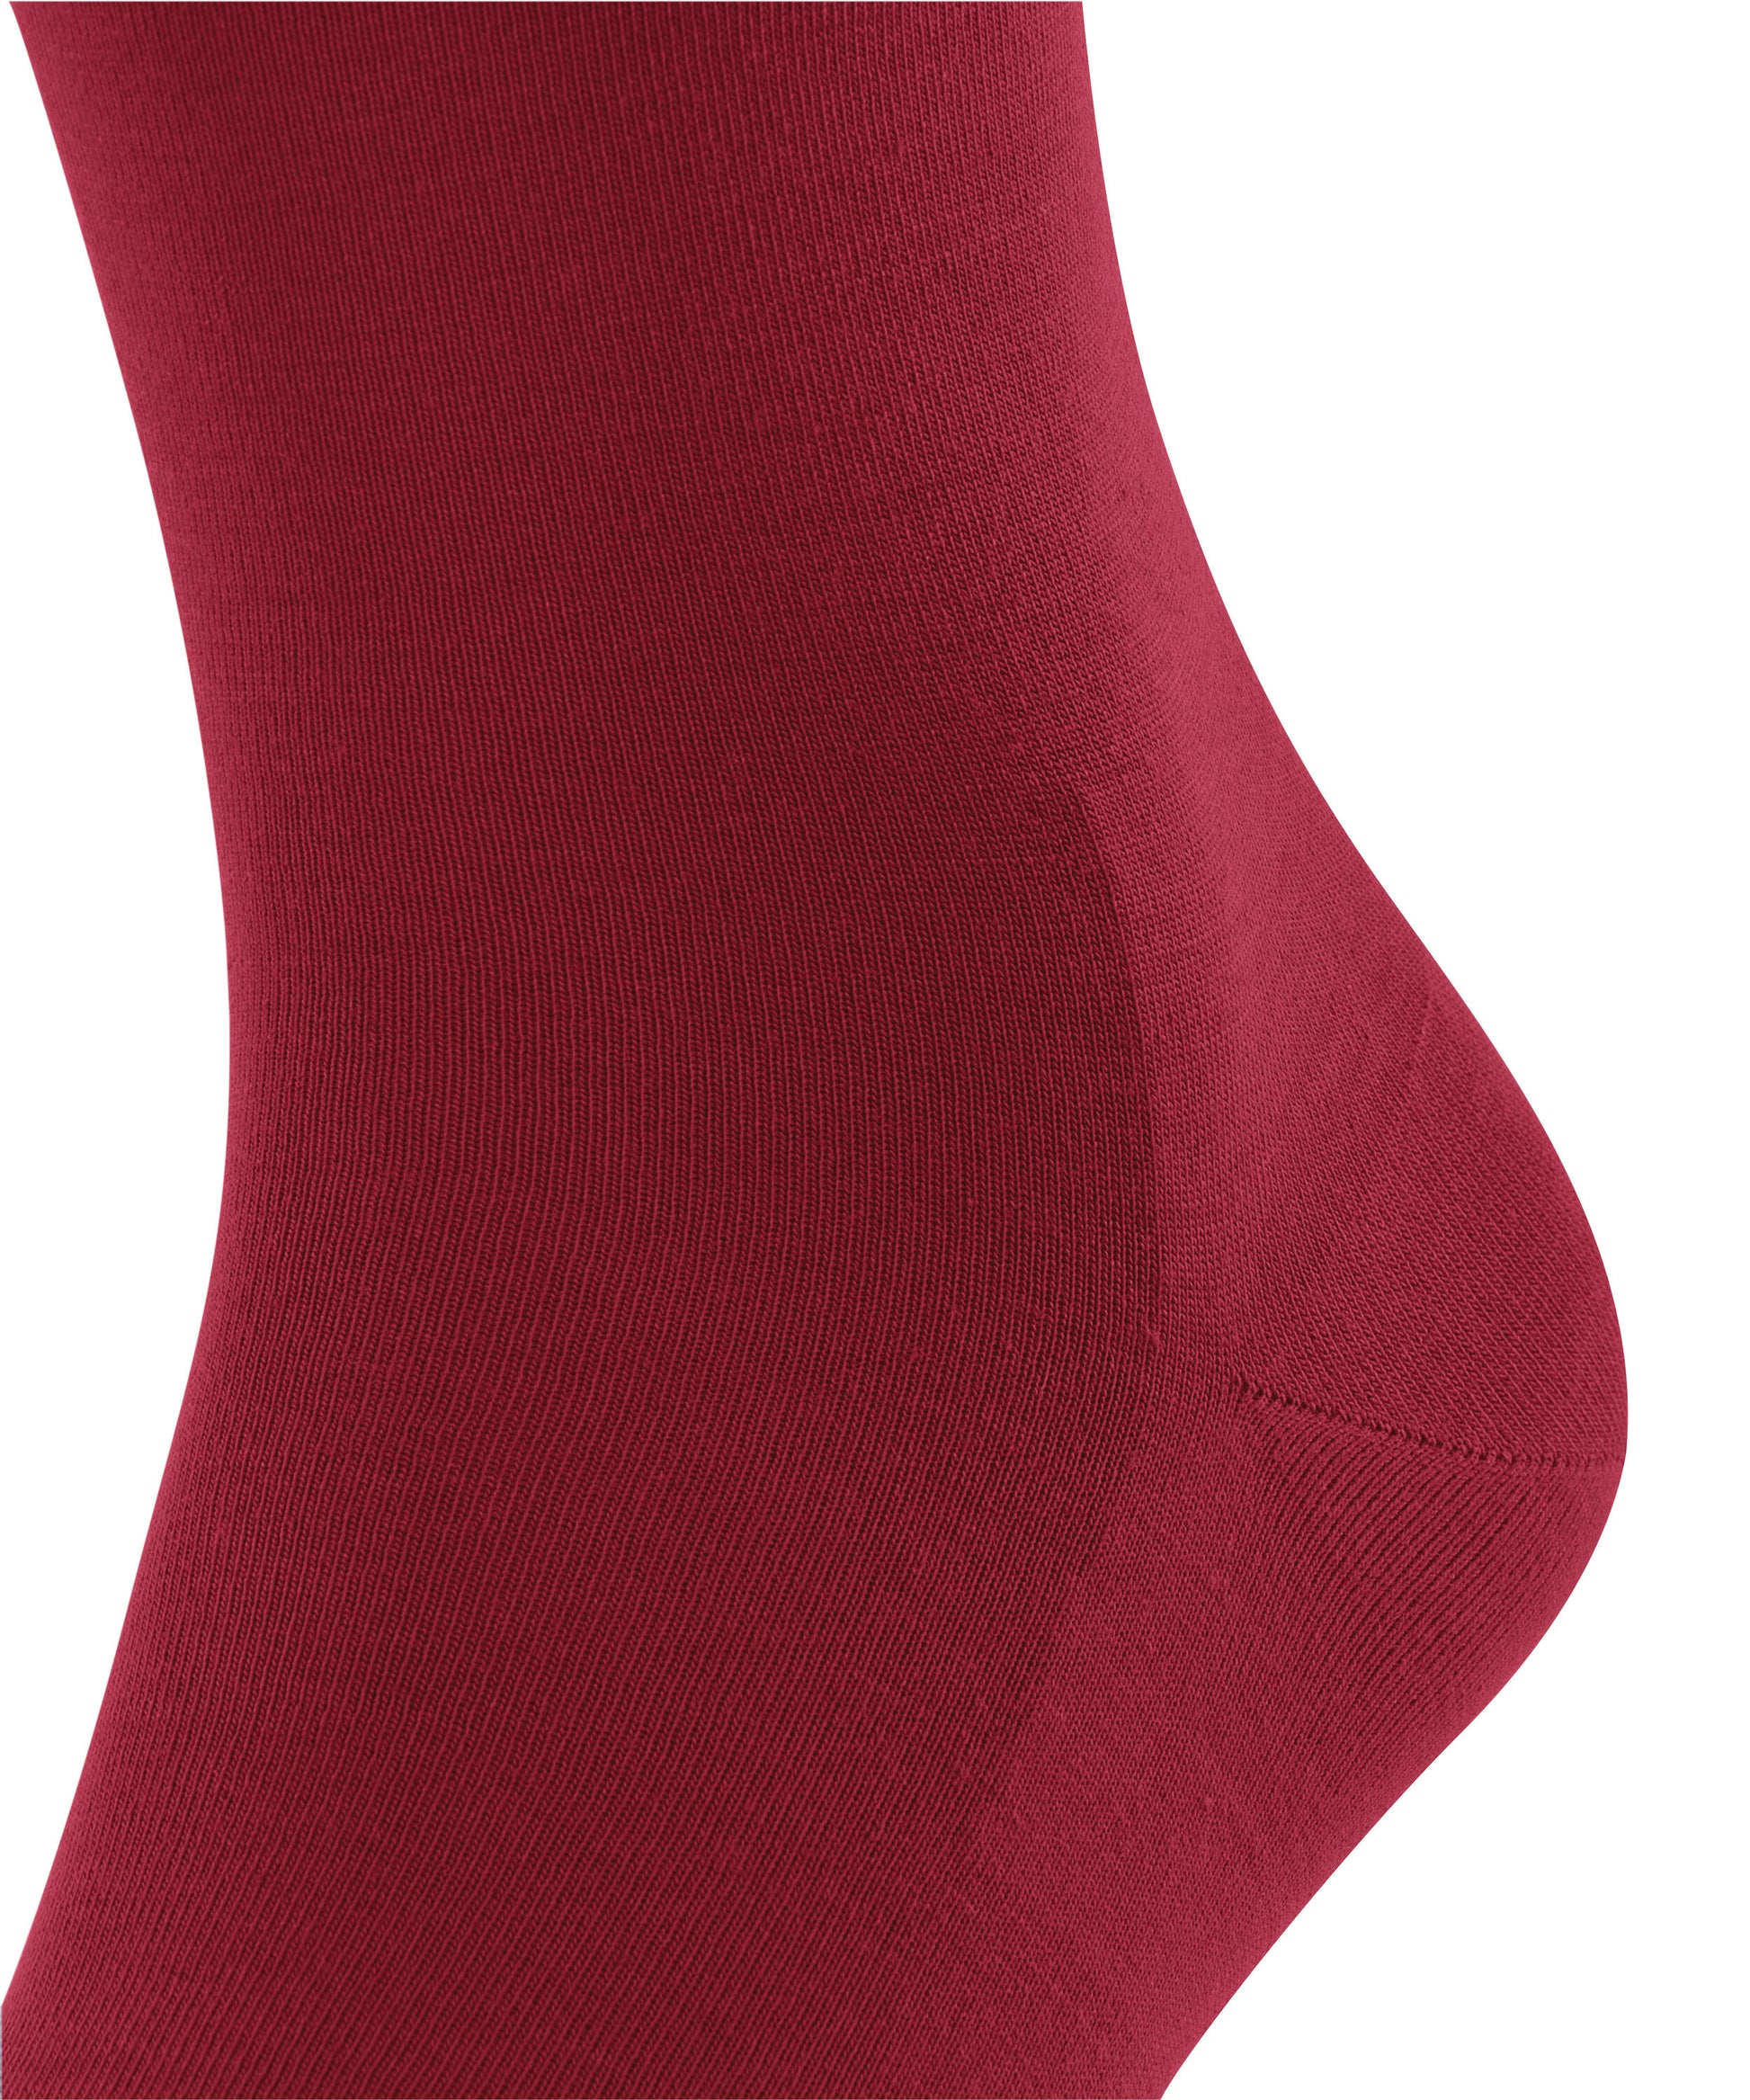 Socken ClimaWool (Scarlet)